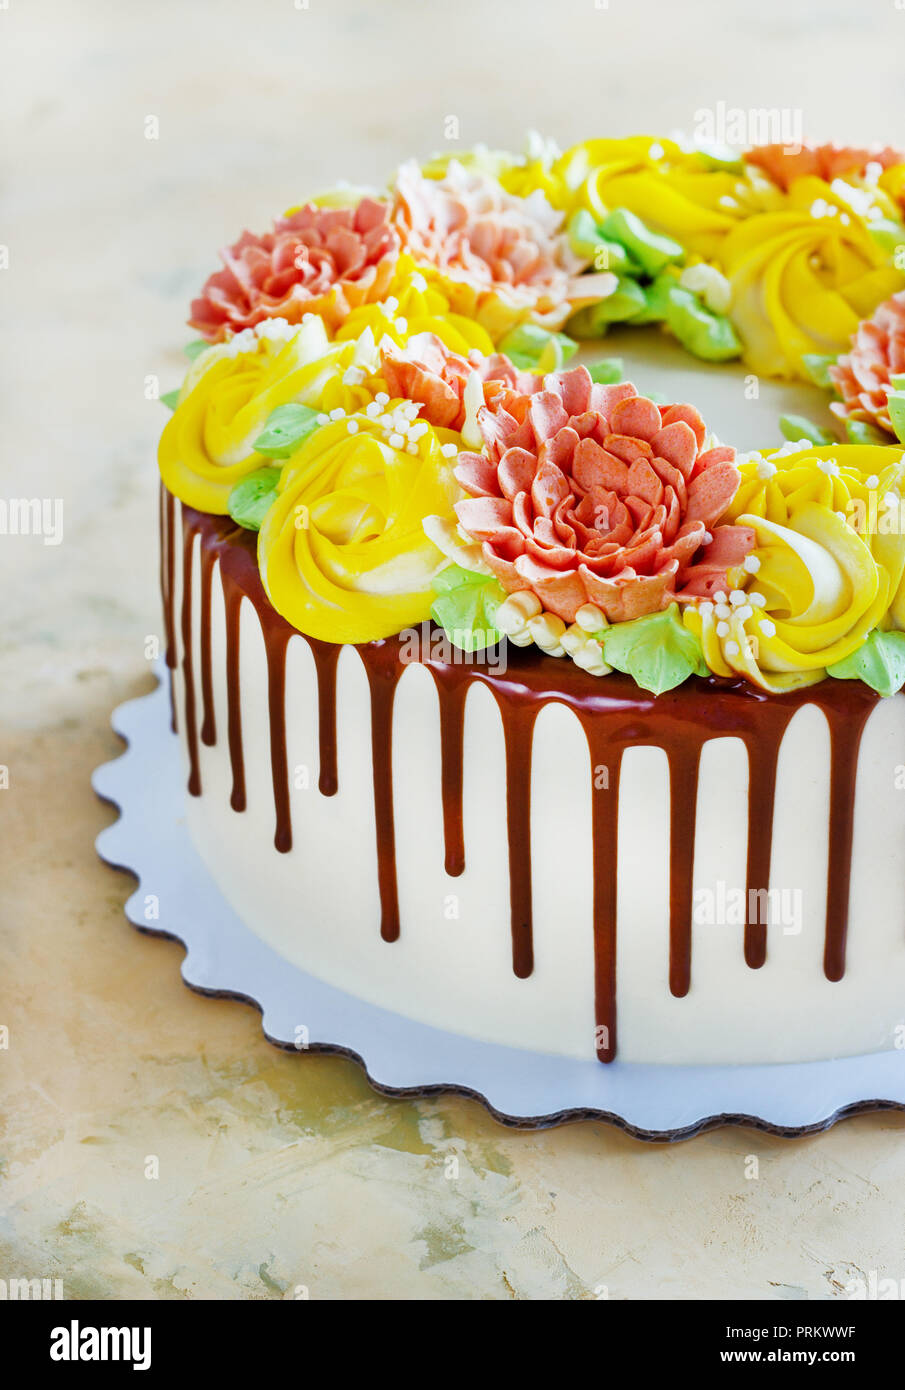 Gâteau d'anniversaire avec des fleurs rose sur fond blanc Banque D'Images